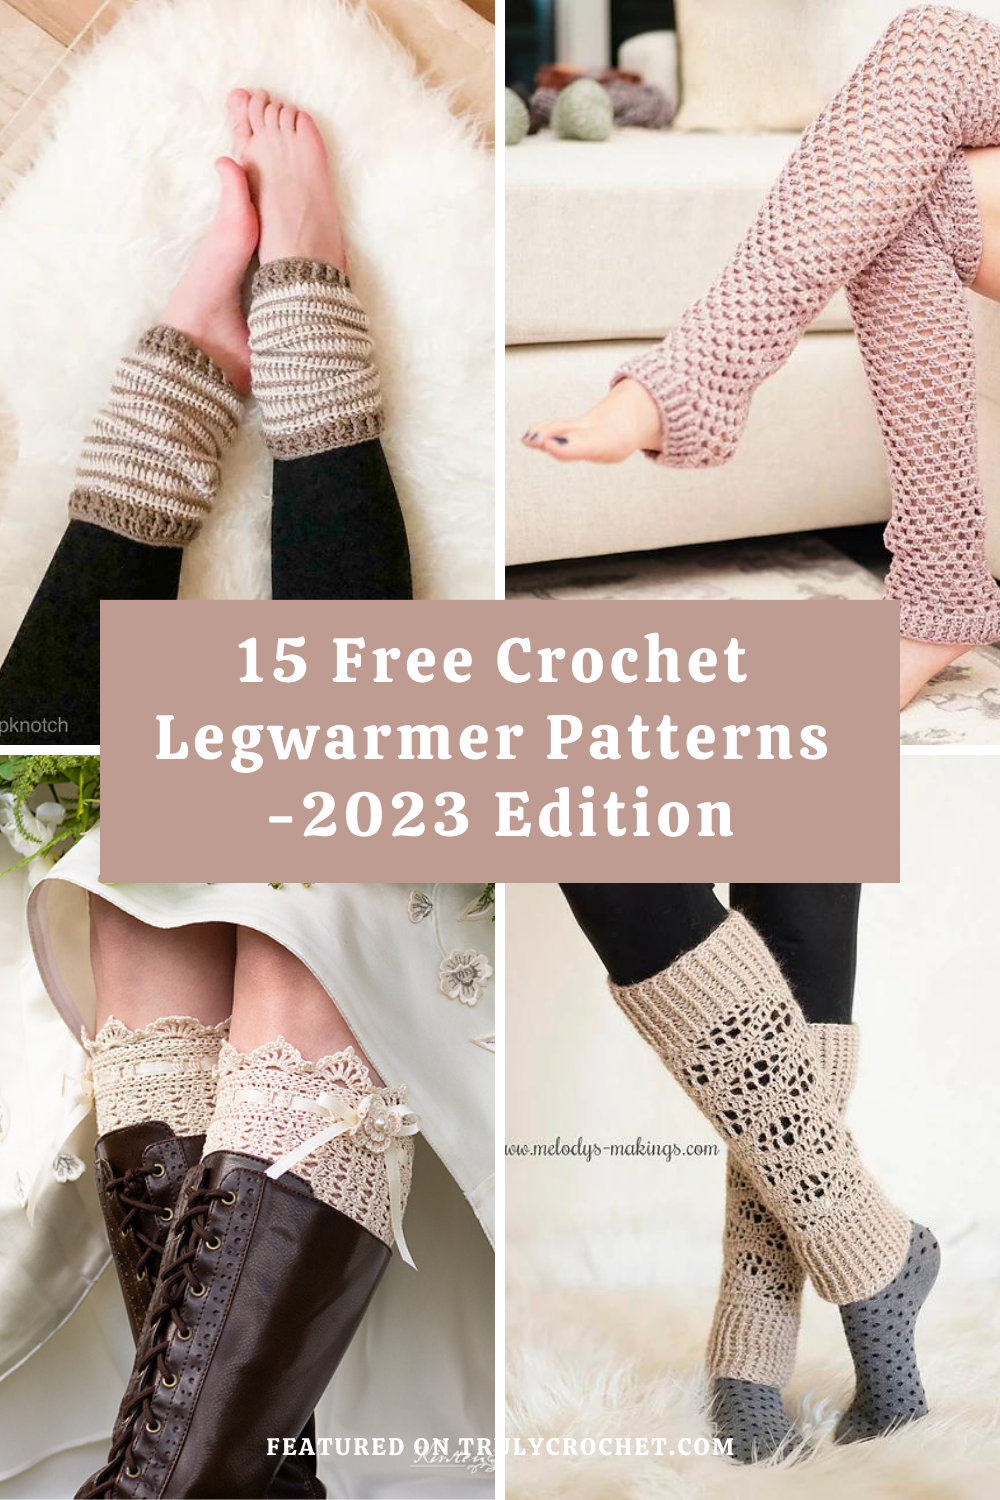 15 Free Crochet Legwarmer Patterns - 2023 Edition